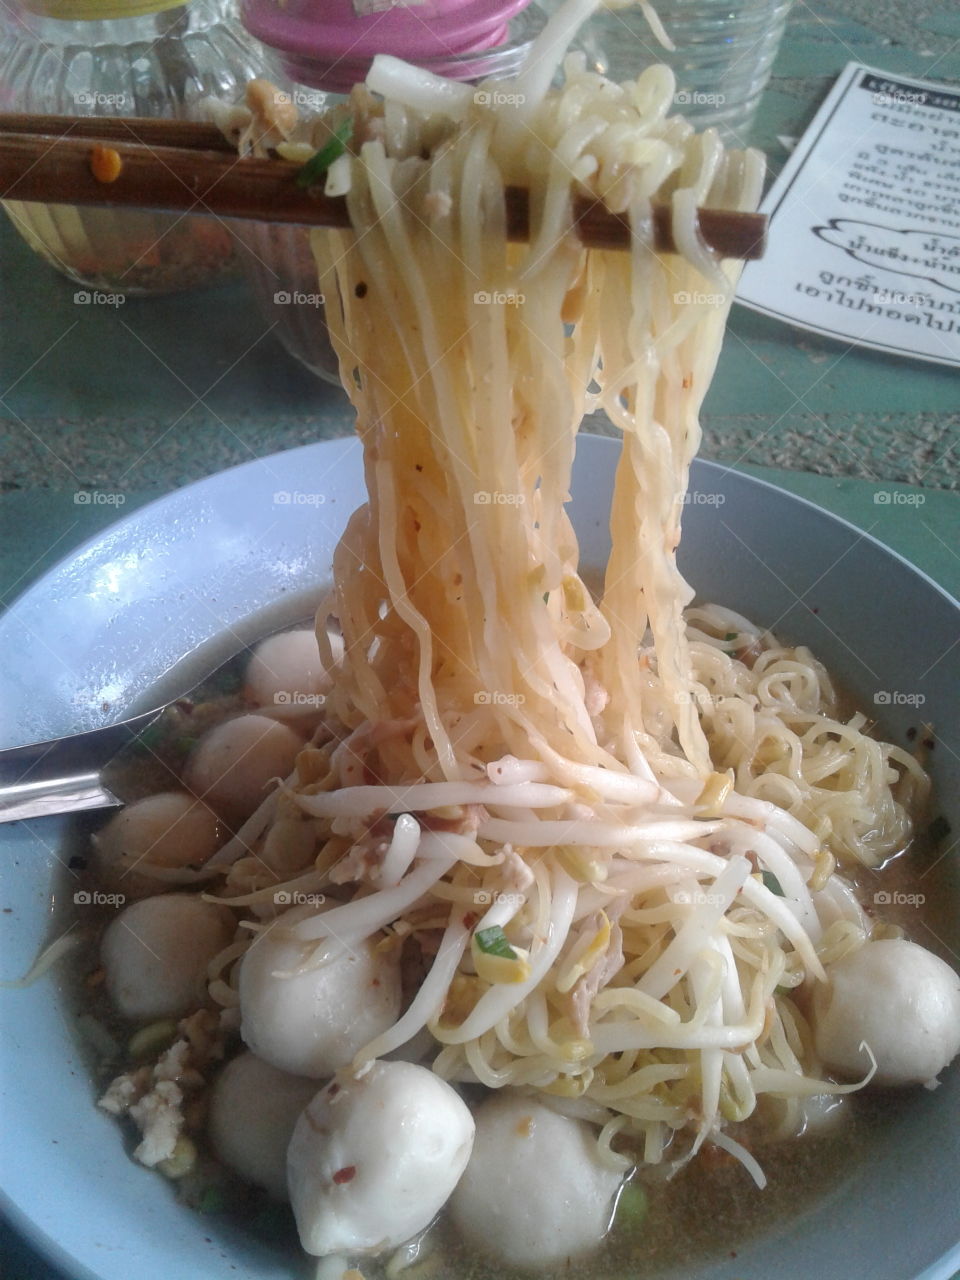 thai noodle